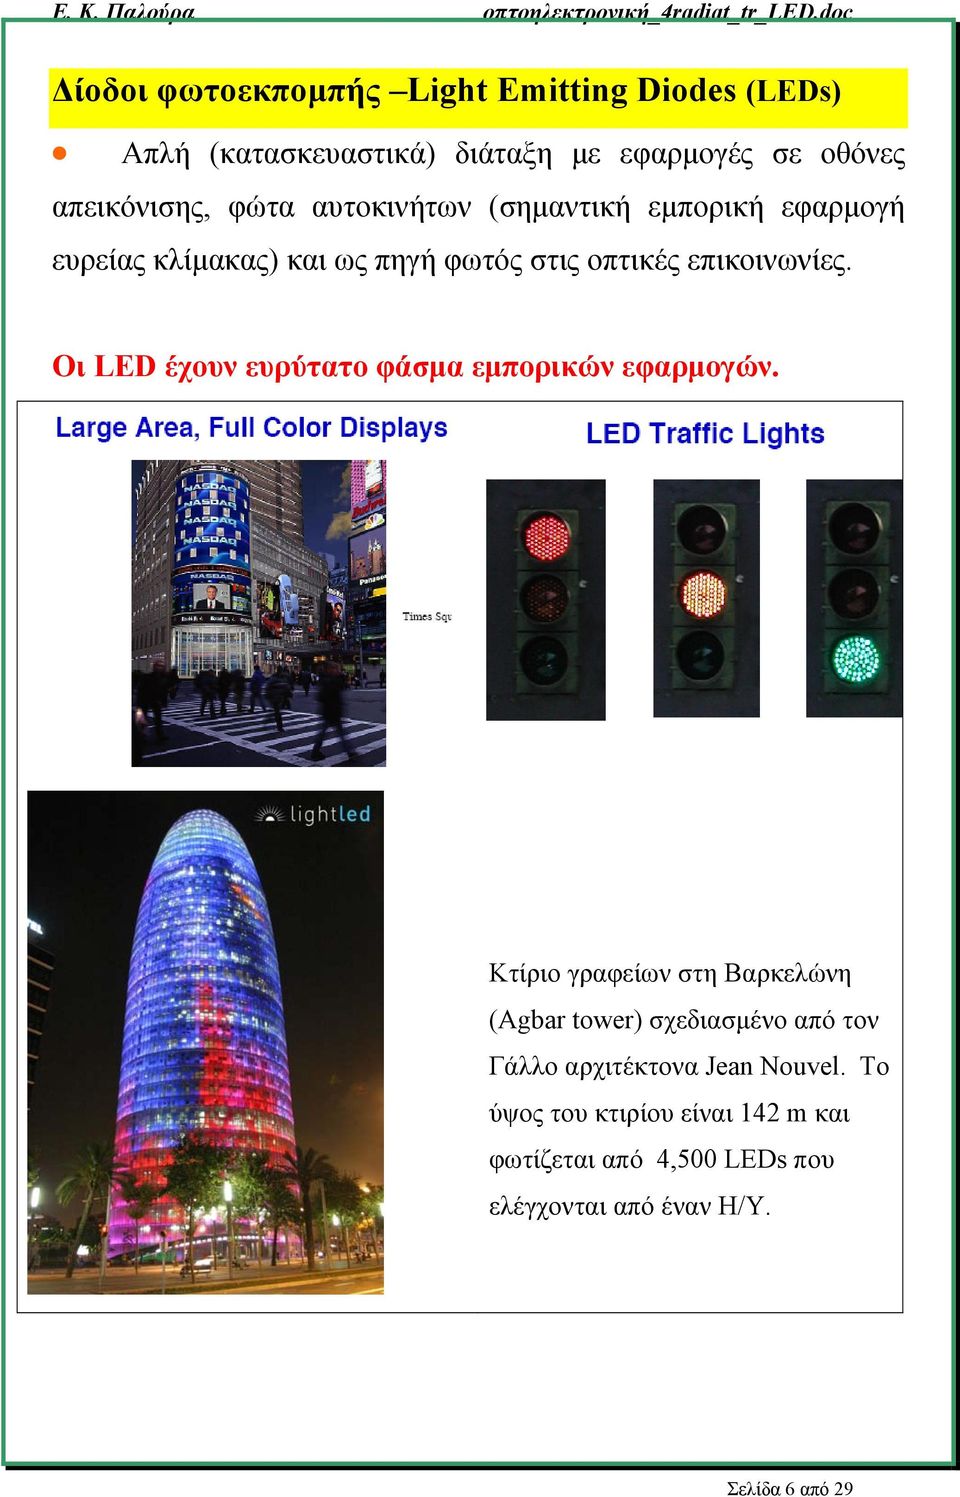 Οι LED έχουν ευρύτατο φάσμα εμπορικών εφαρμογών.